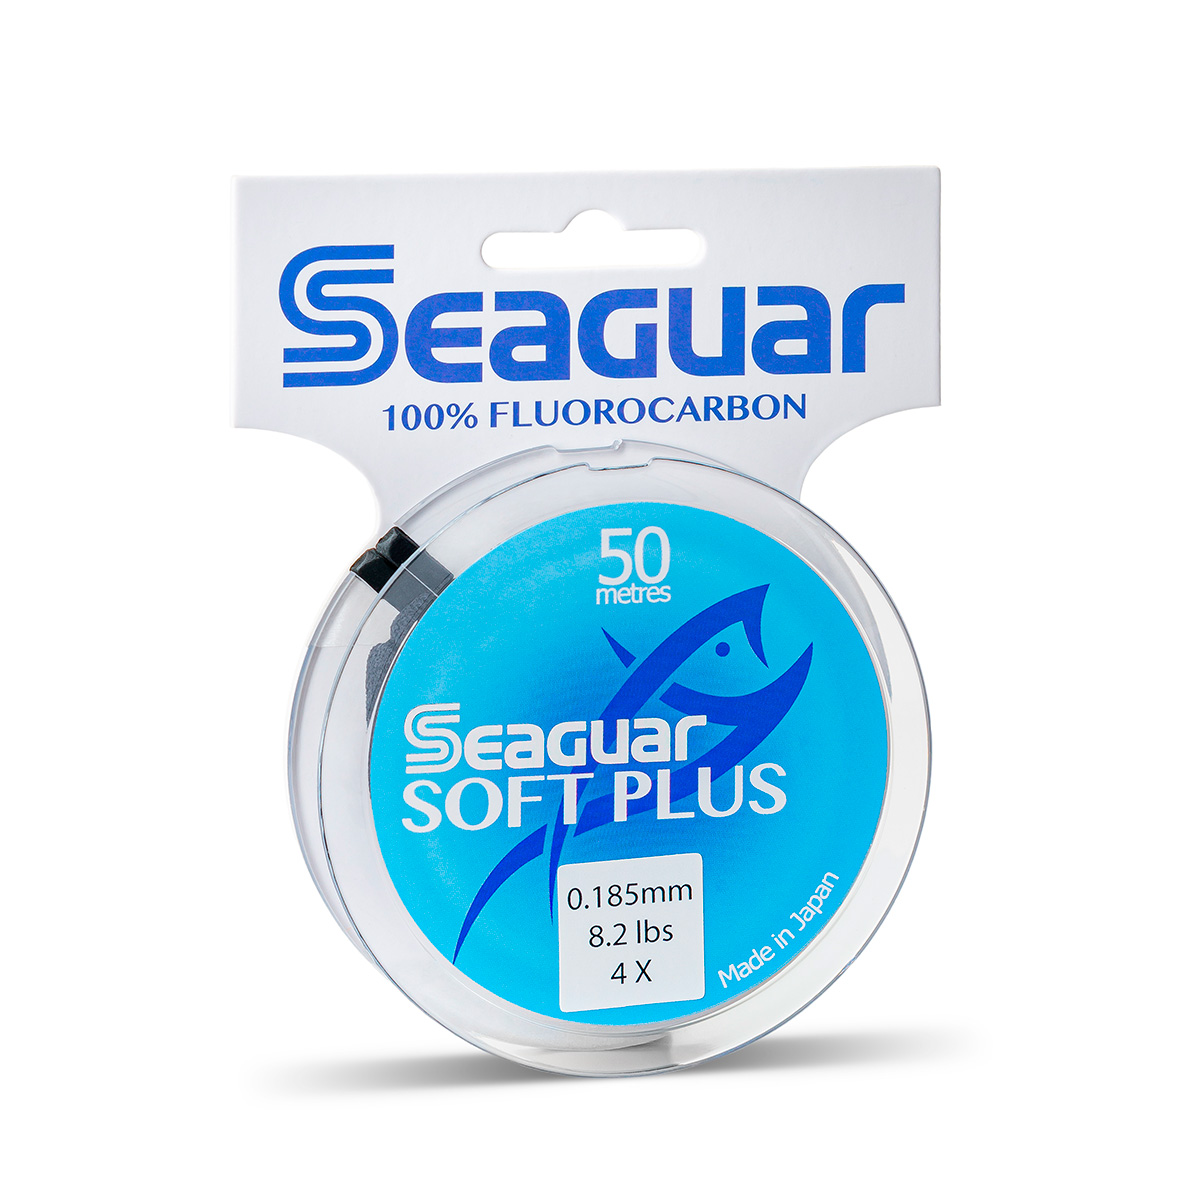 Seaguar Soft Plus Fluorocarbon Line Spools